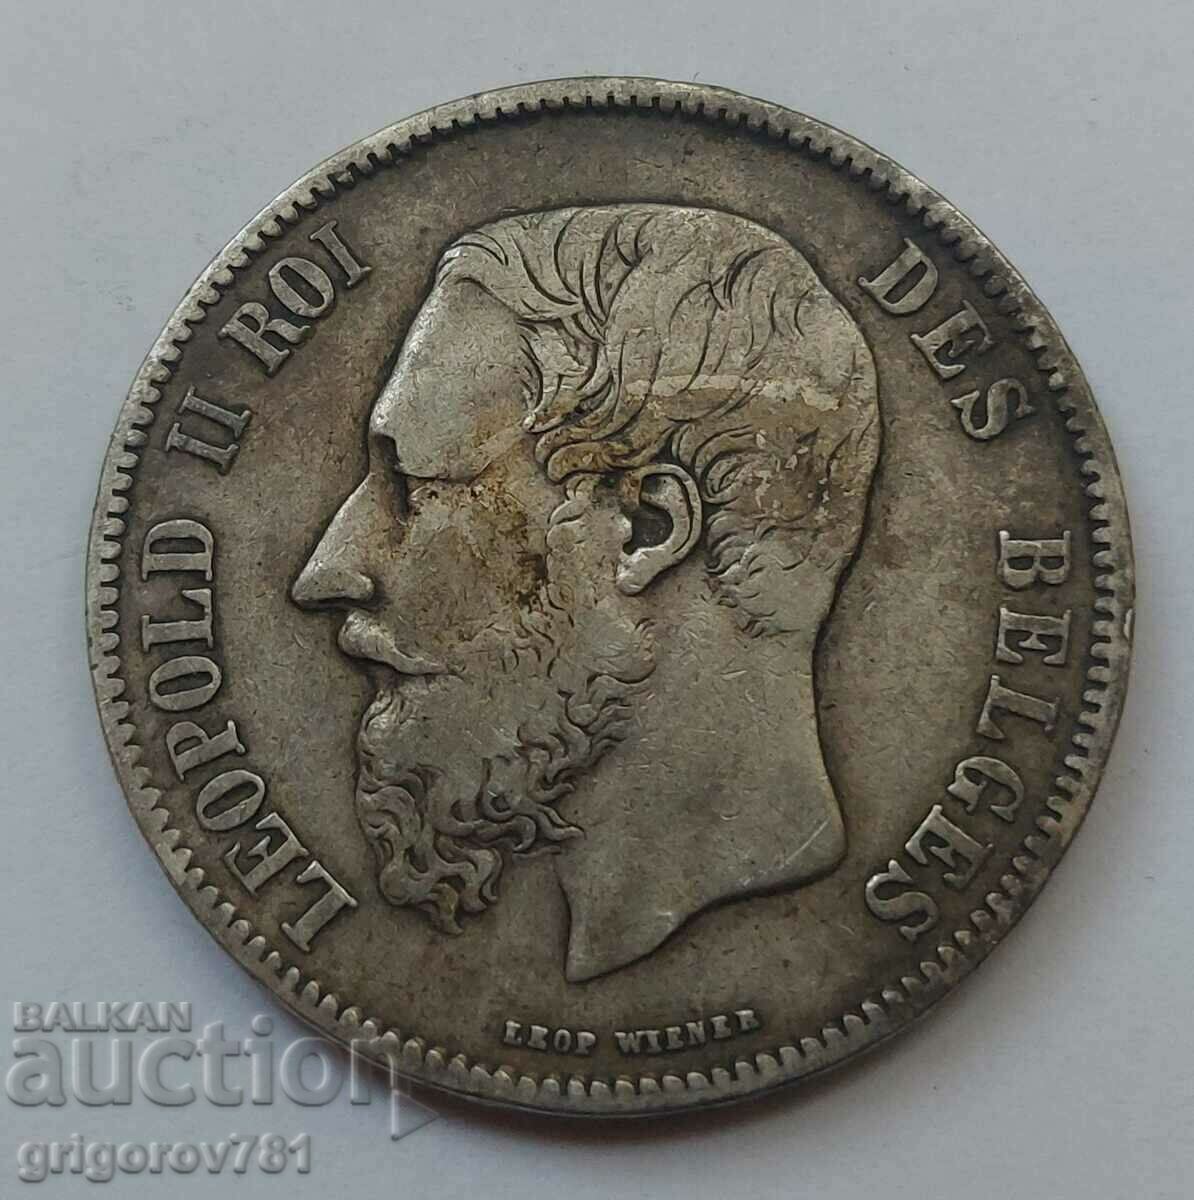 5 Francs Silver Belgium 1869 Silver Coin #167